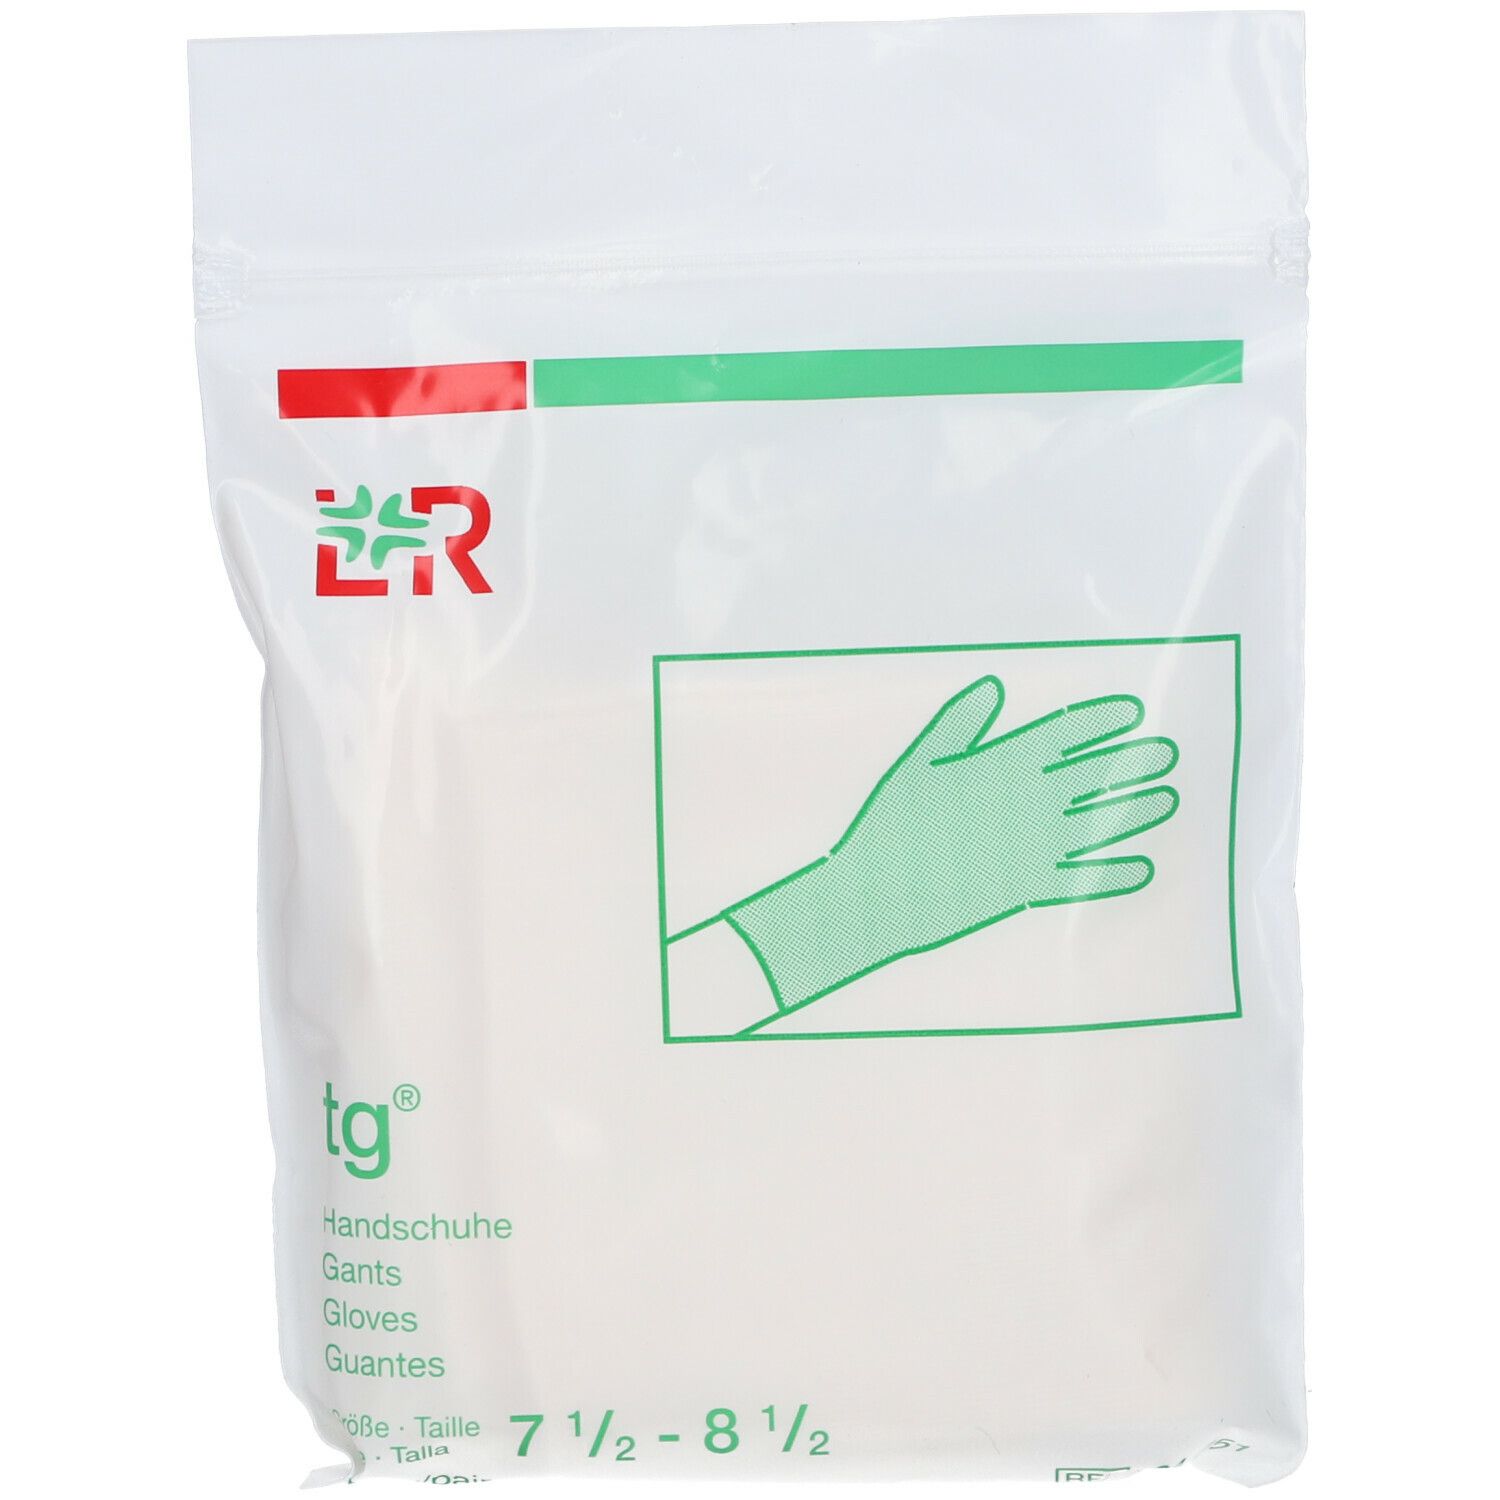 tg® Handschuhe mittel Gr. 7,5 - 8,5